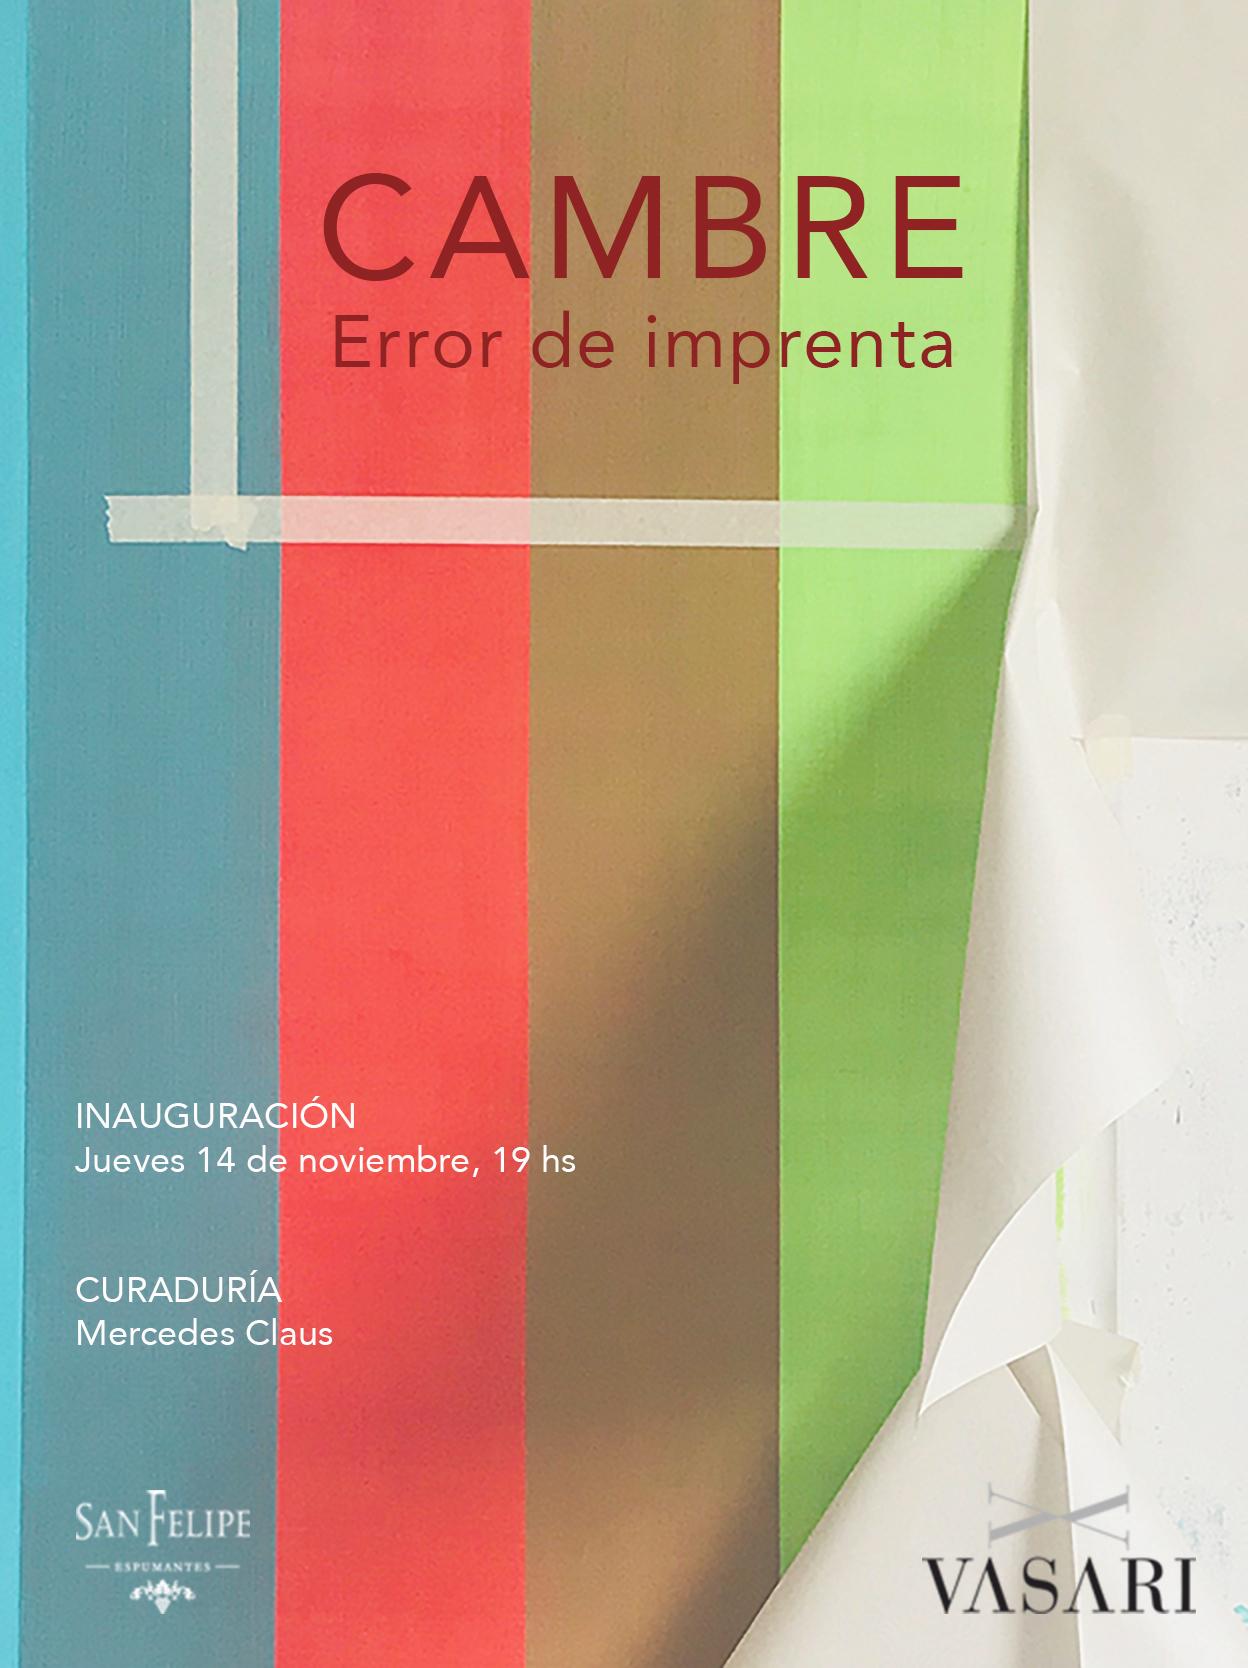 Juan José CAMBRE en Vasari ǀ Inauguración jueves 14, 19 hs